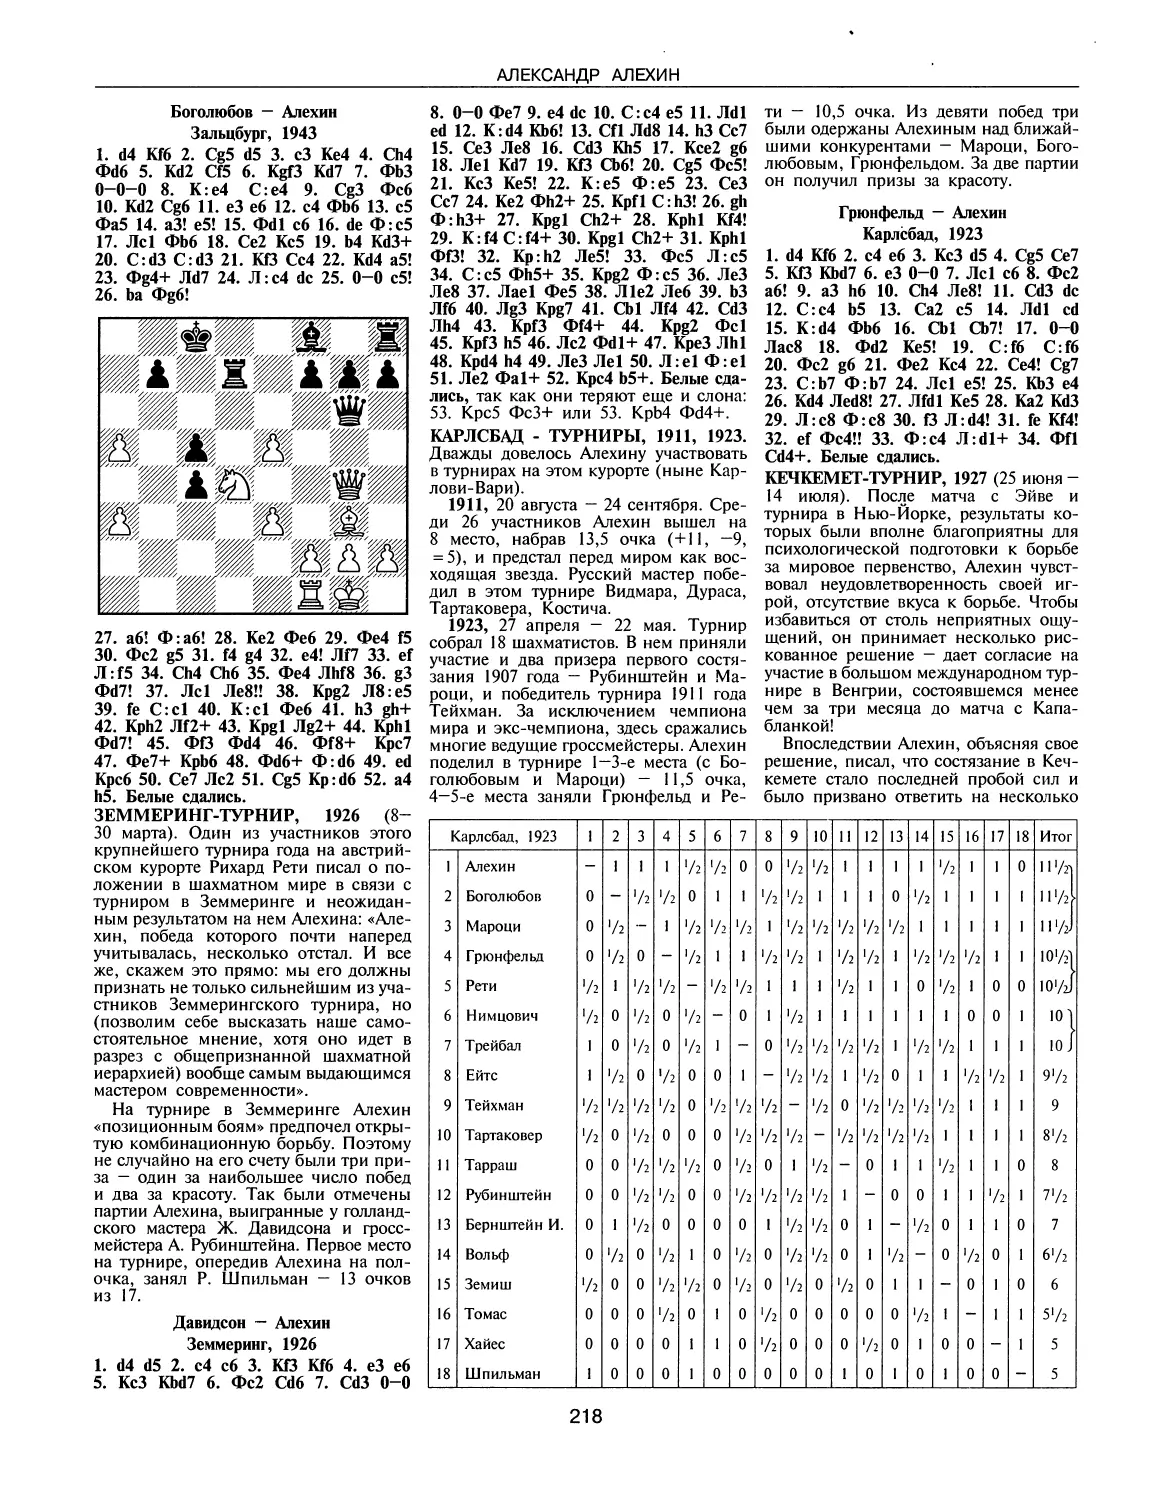 Земмеринг-турнир, 1926
Карлсбад-турниры, 1911, 1923
Кечкемет-турнир, 1927